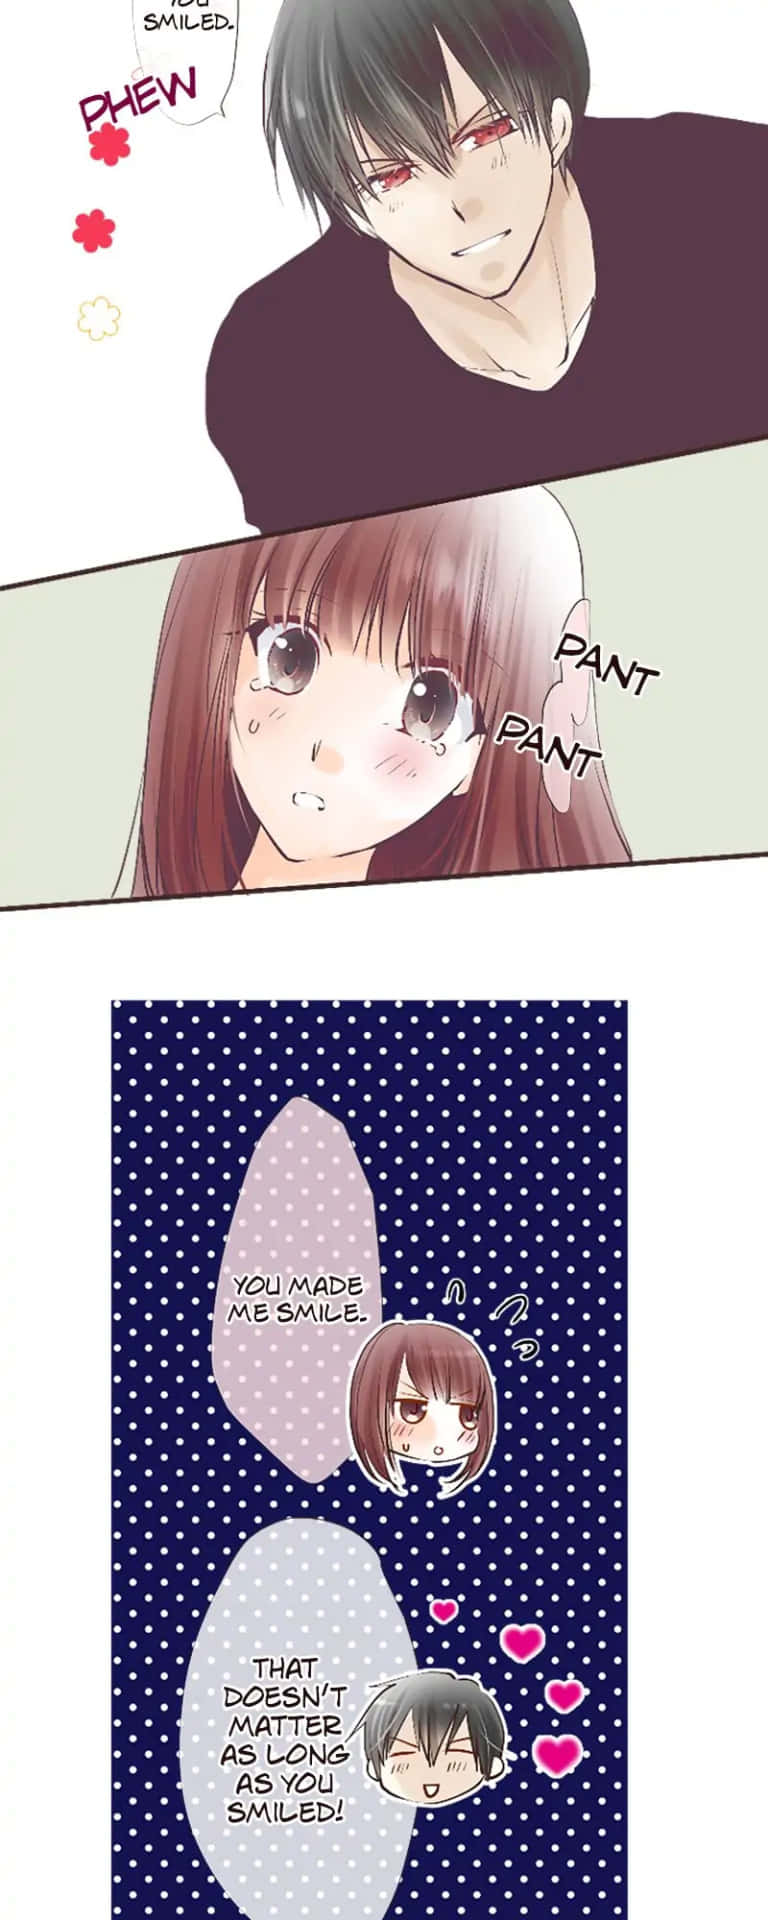 Imagenuna Chica De Anime Triste Con Lágrimas En Los Ojos Fondo de pantalla